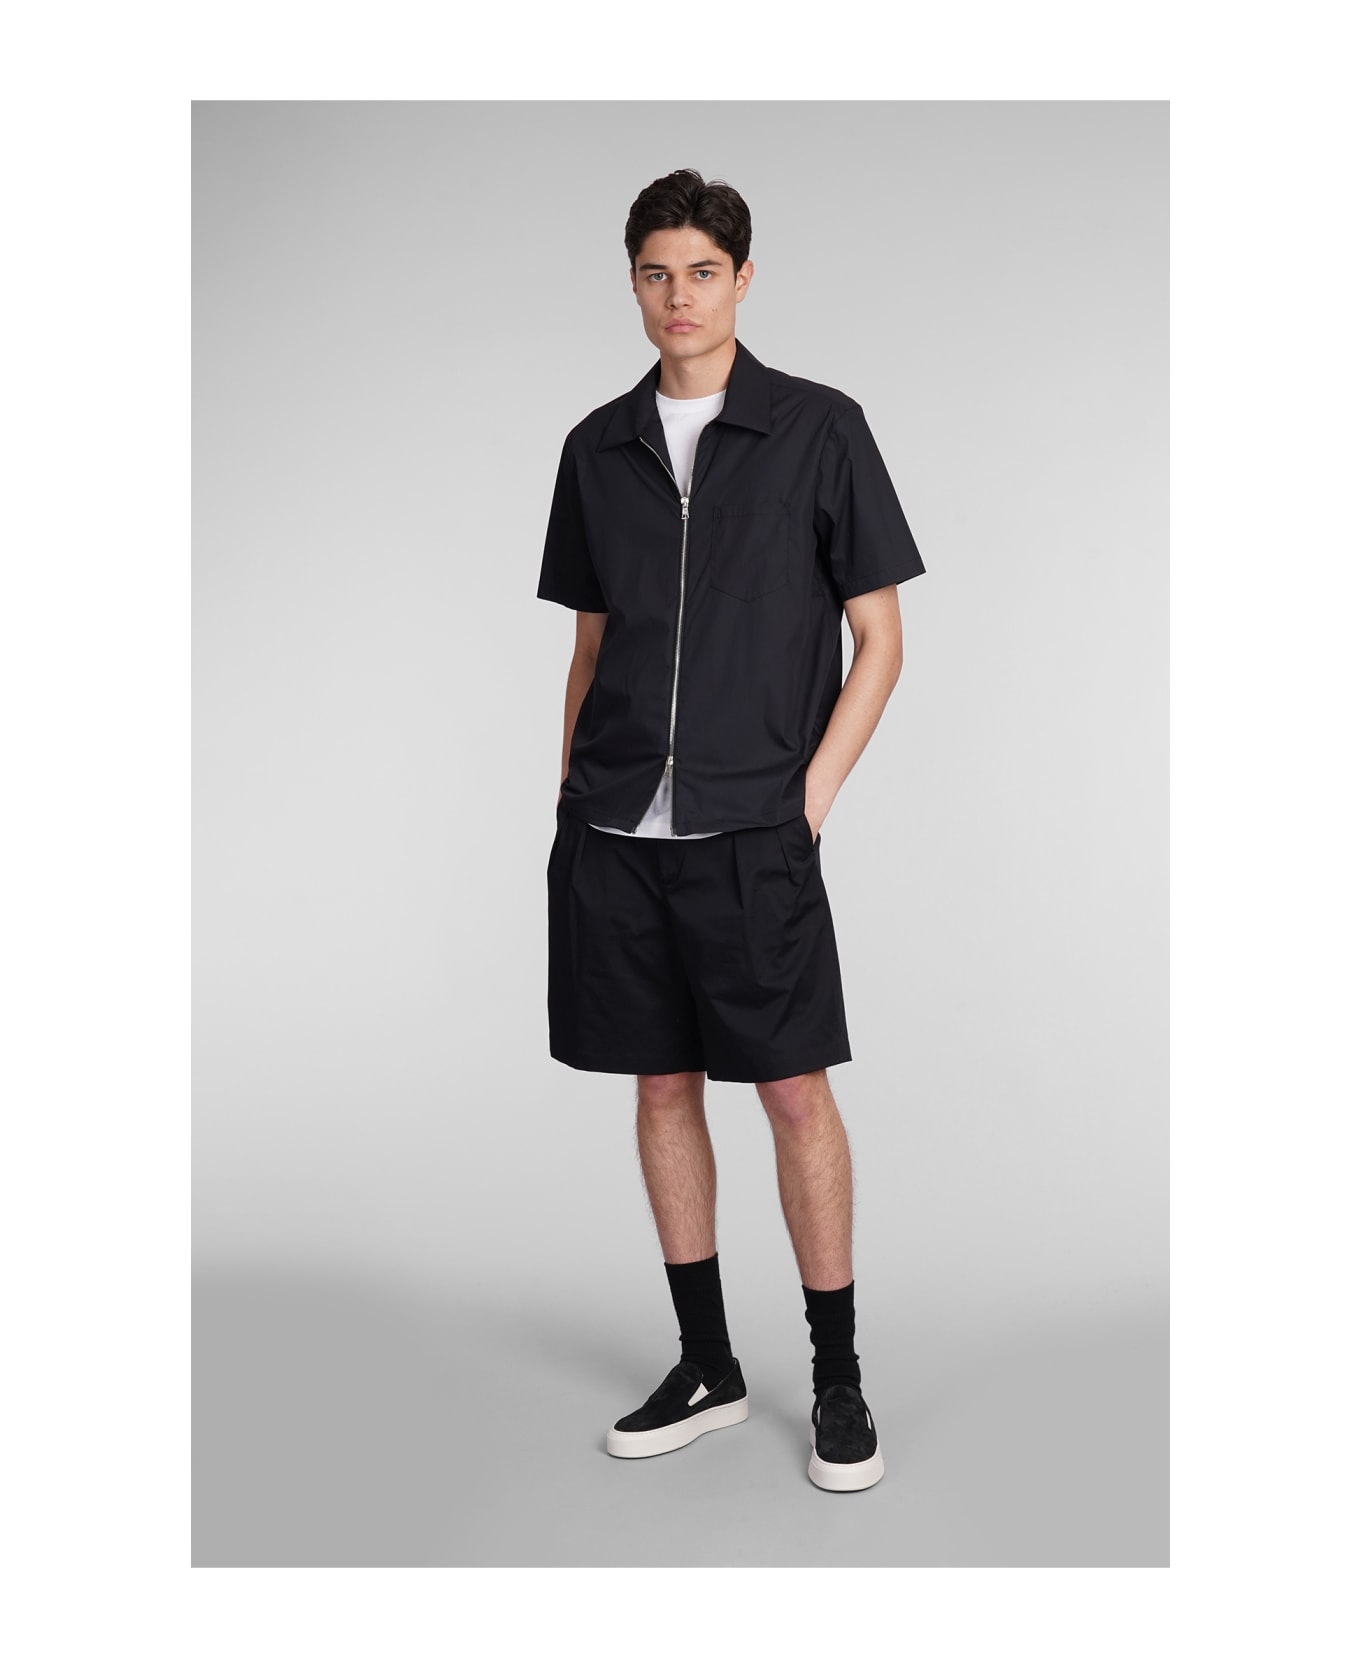 Low Brand Miami Shorts In Black Cotton - black ショートパンツ